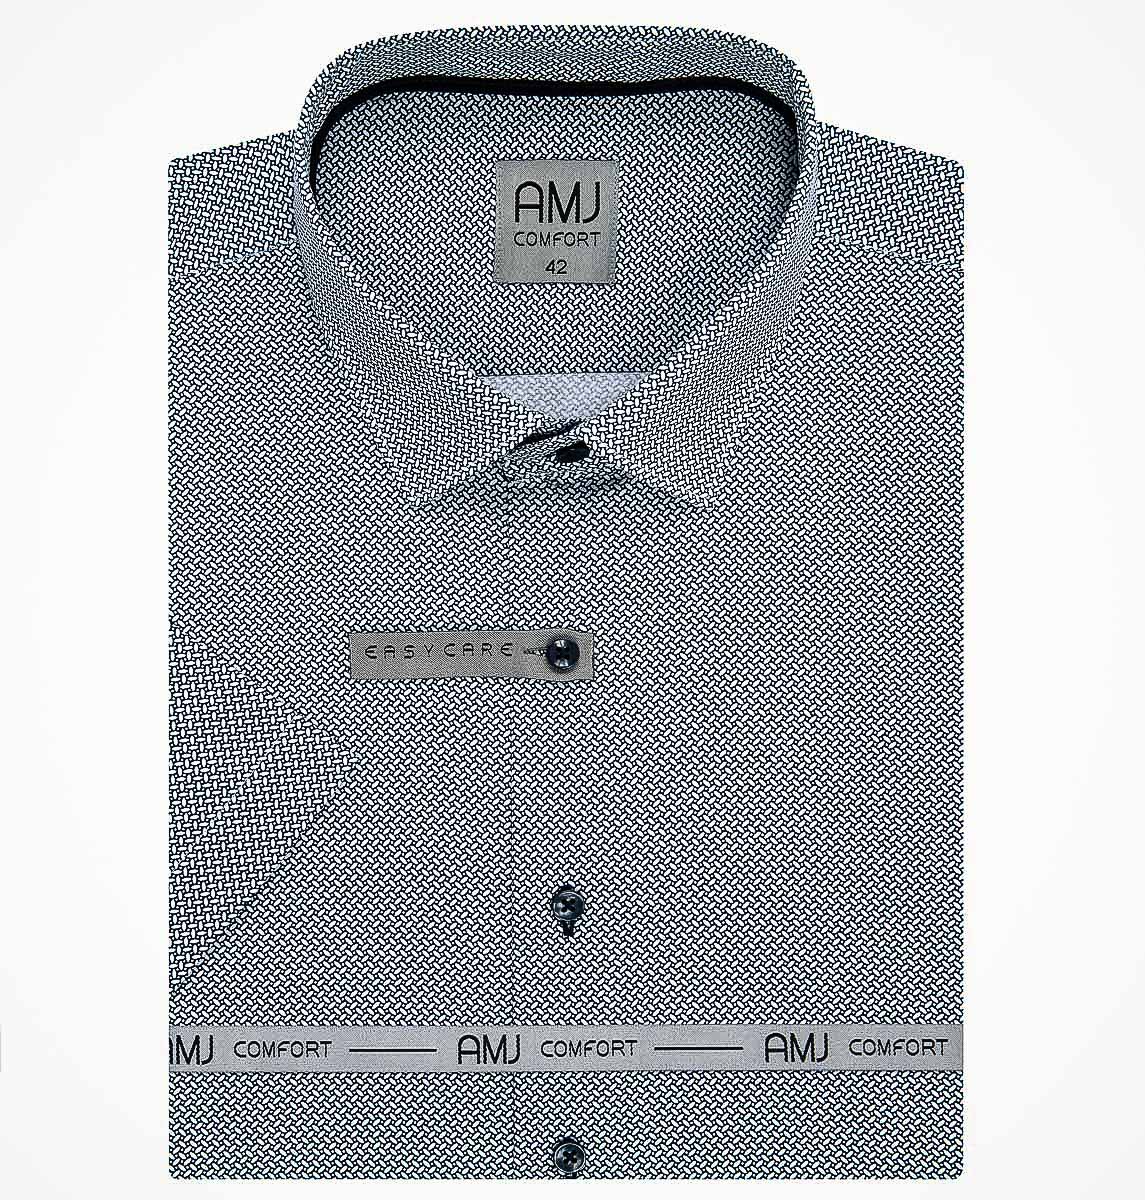 Pánská košile AMJ bavlněná, šedo-bílá mozaika VKBR1194, krátký rukáv (regular + slim fit)